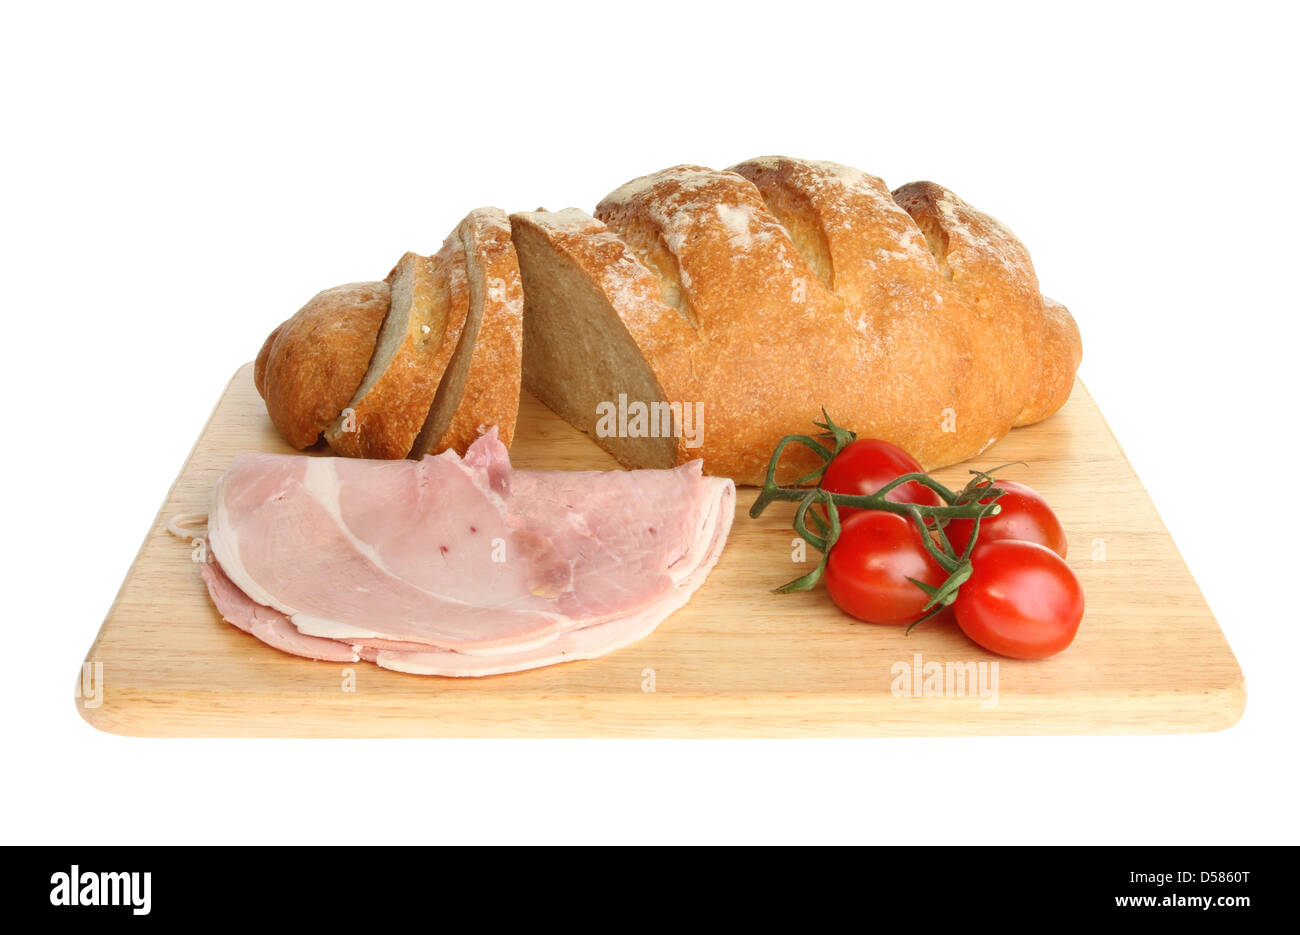 Du pain Bloomer avec jambon et tomates sur une planche en bois isolés contre white Banque D'Images